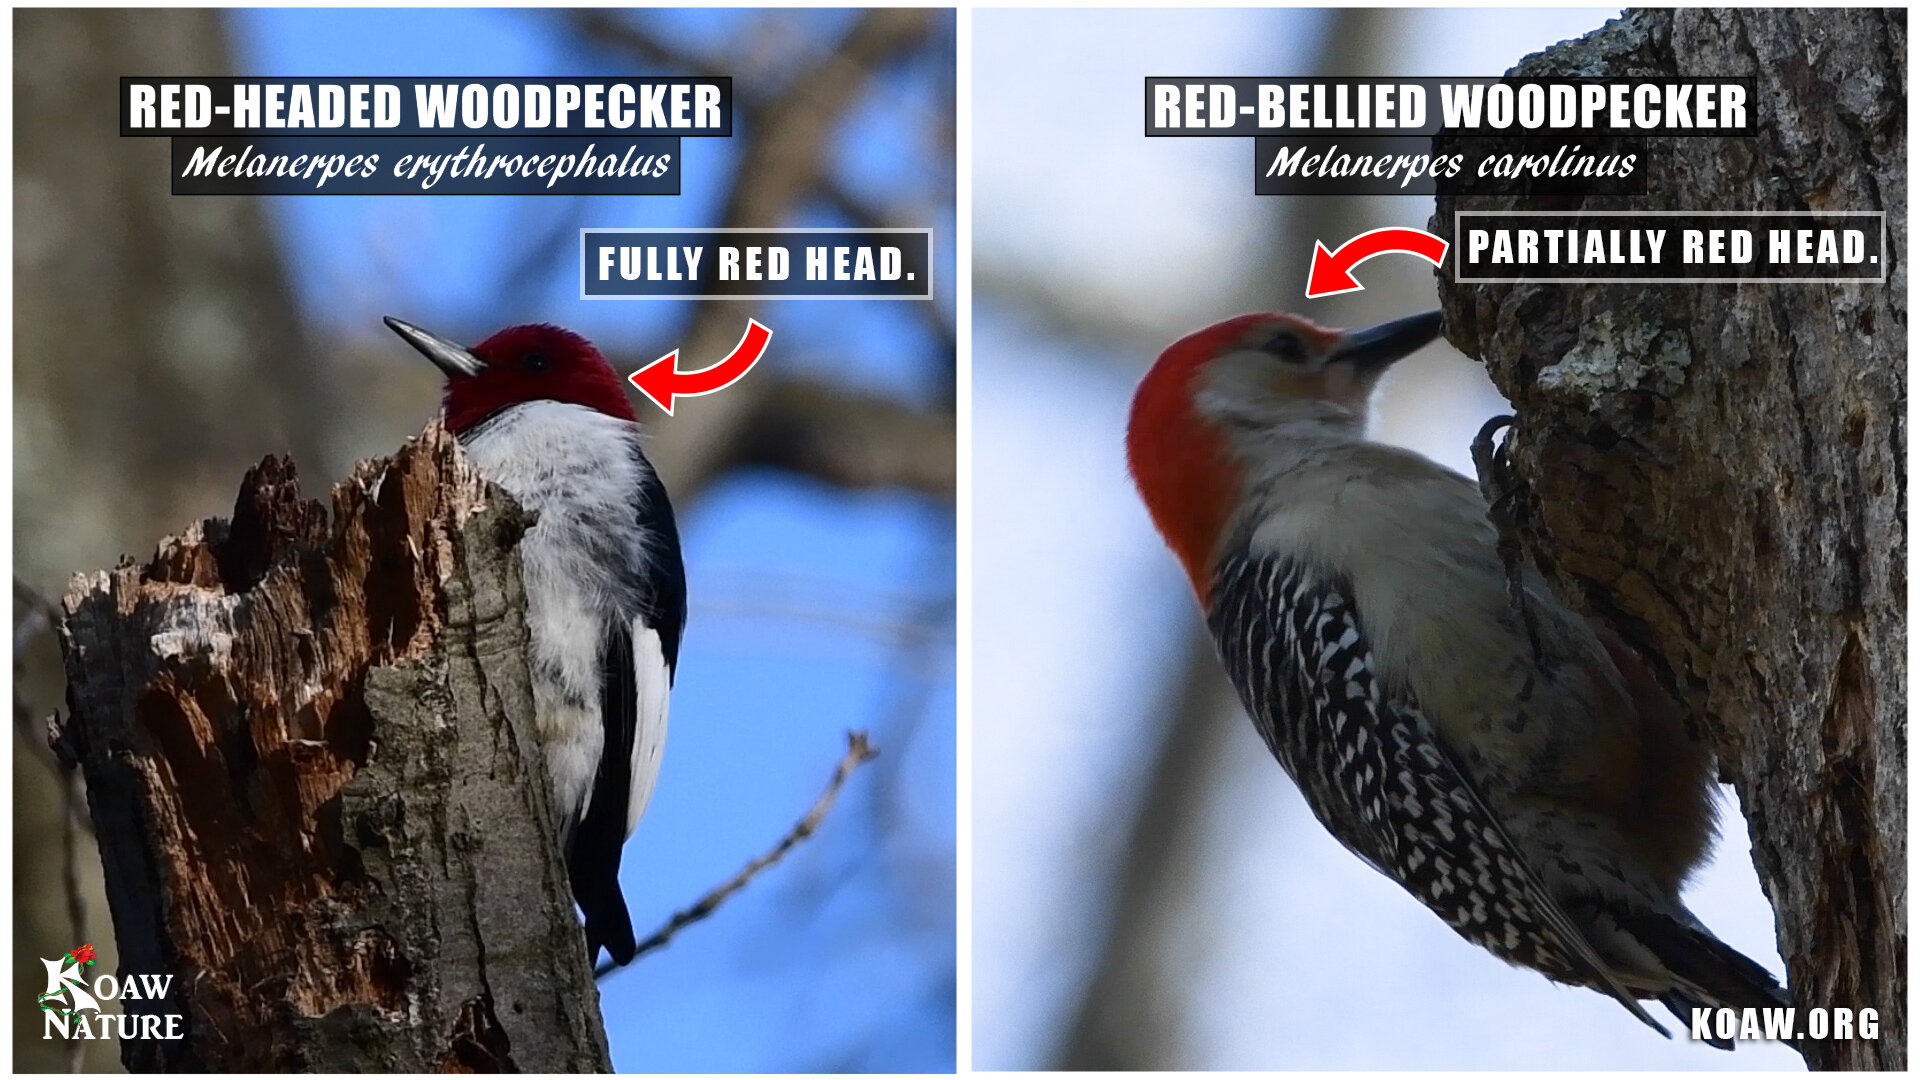 Red Headed Woodpecker vs Red Bellied Woodpecker Koaw Nature.jpg